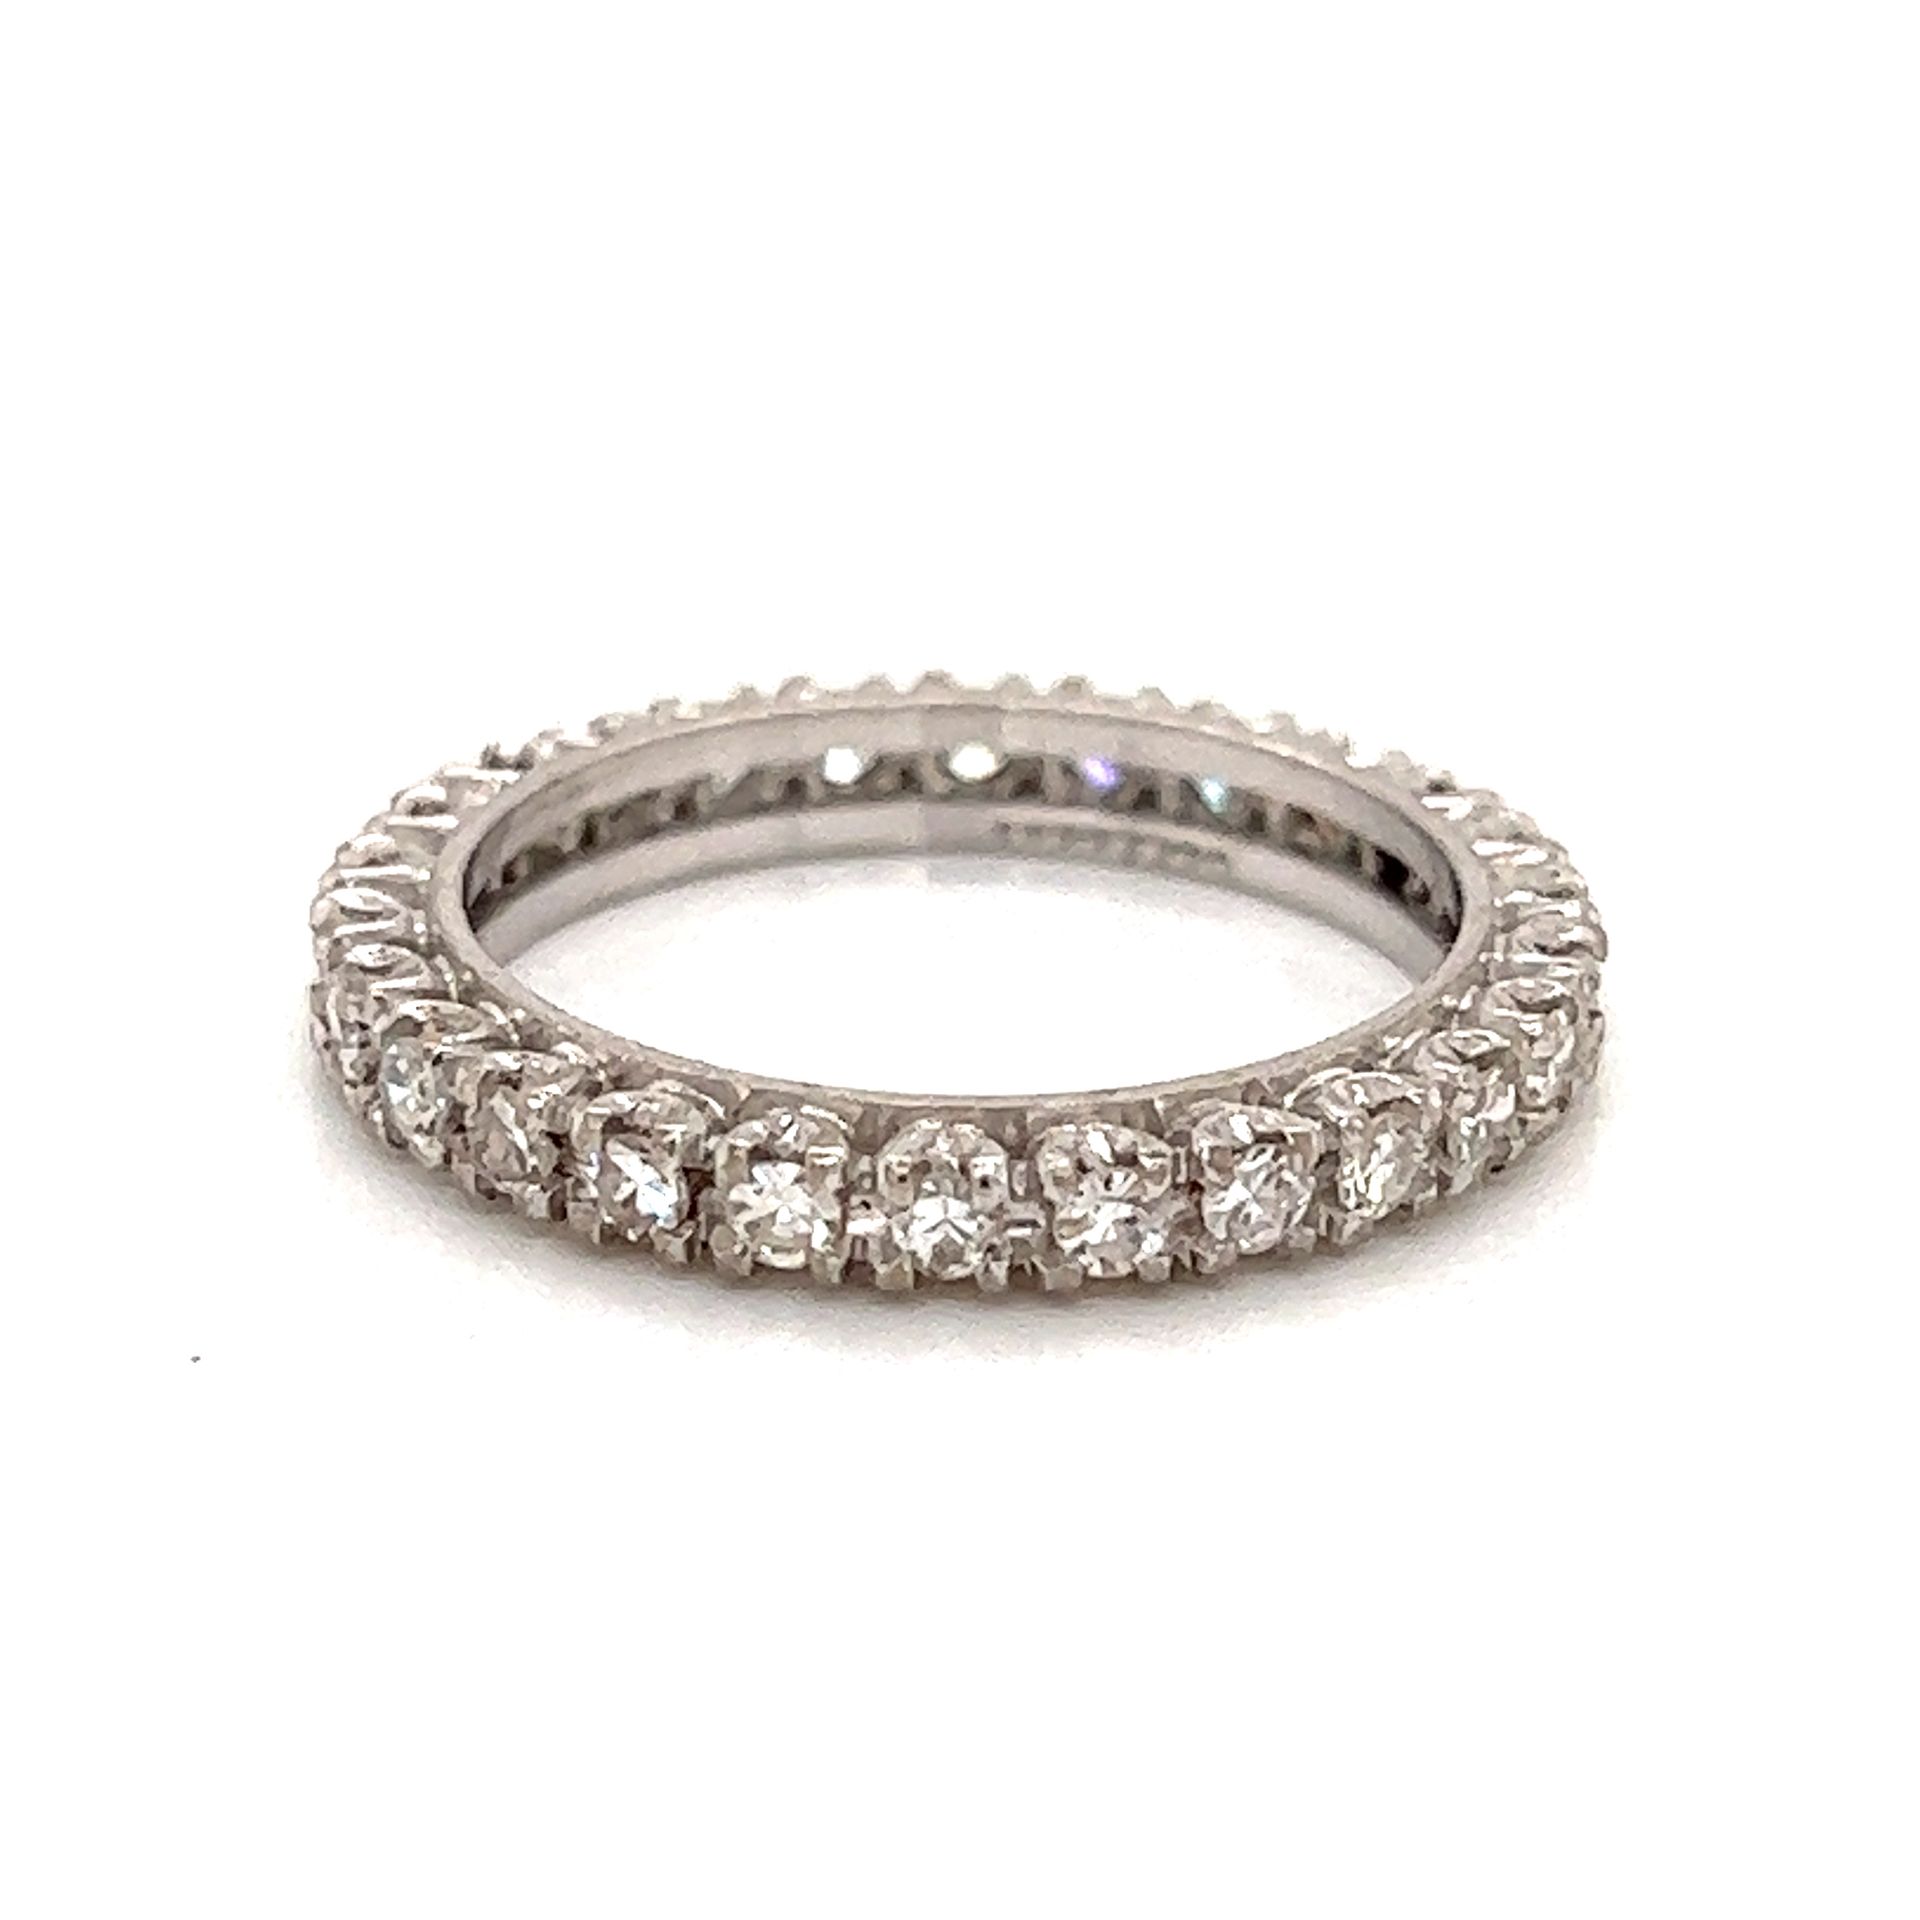 Platinum Diamond Eternity Ring 铂金重量3.7克 钻石约0.90克拉 永恒之戒尺寸7.25 尺寸0.10 "x0.89"